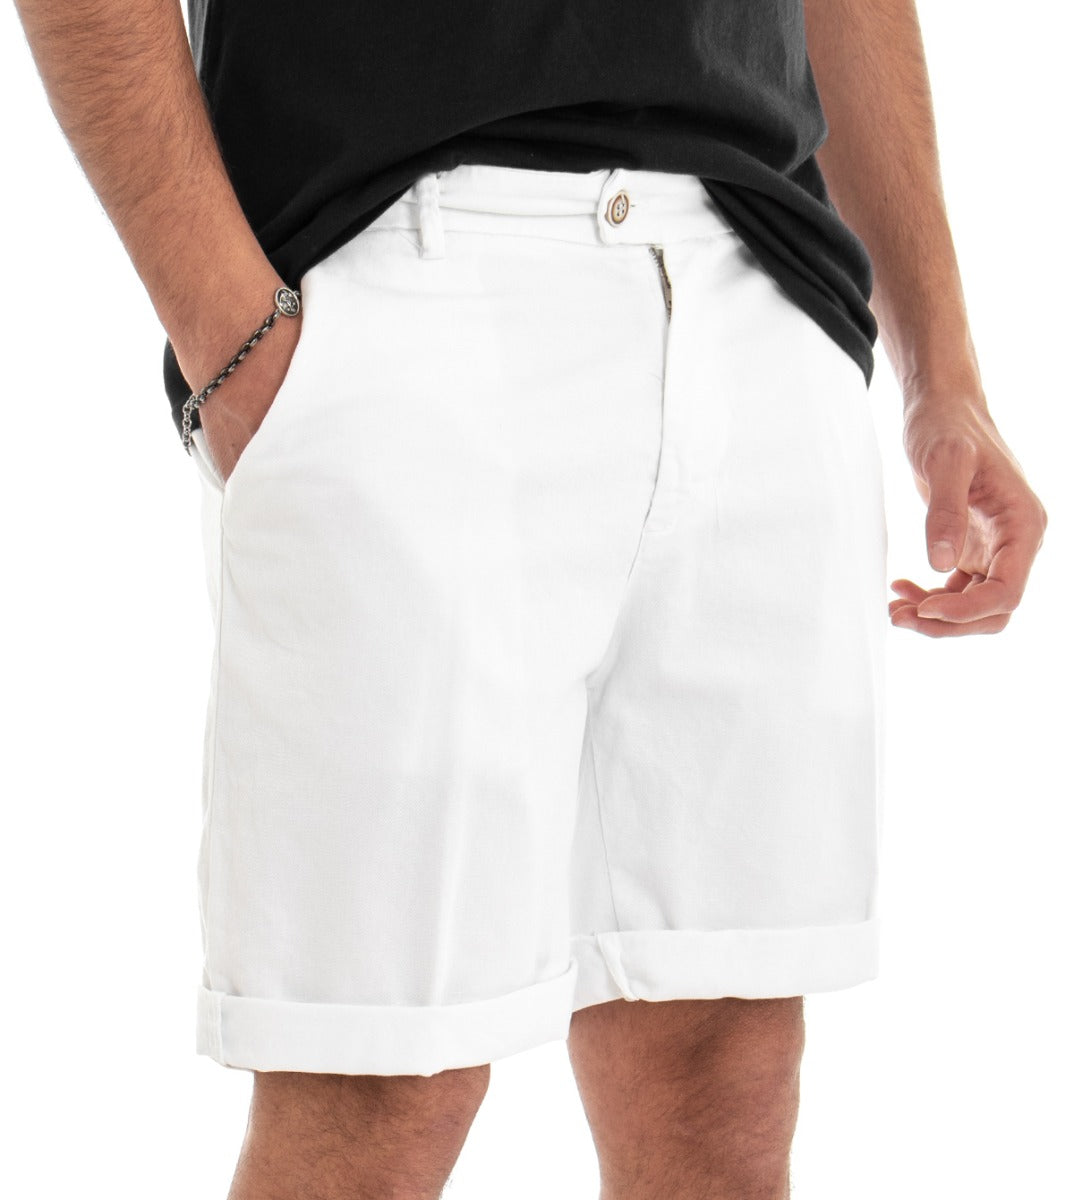 Bermuda Pantaloncino Uomo Corto Cotone Bianco Tasca America GIOSAL-PC1379A